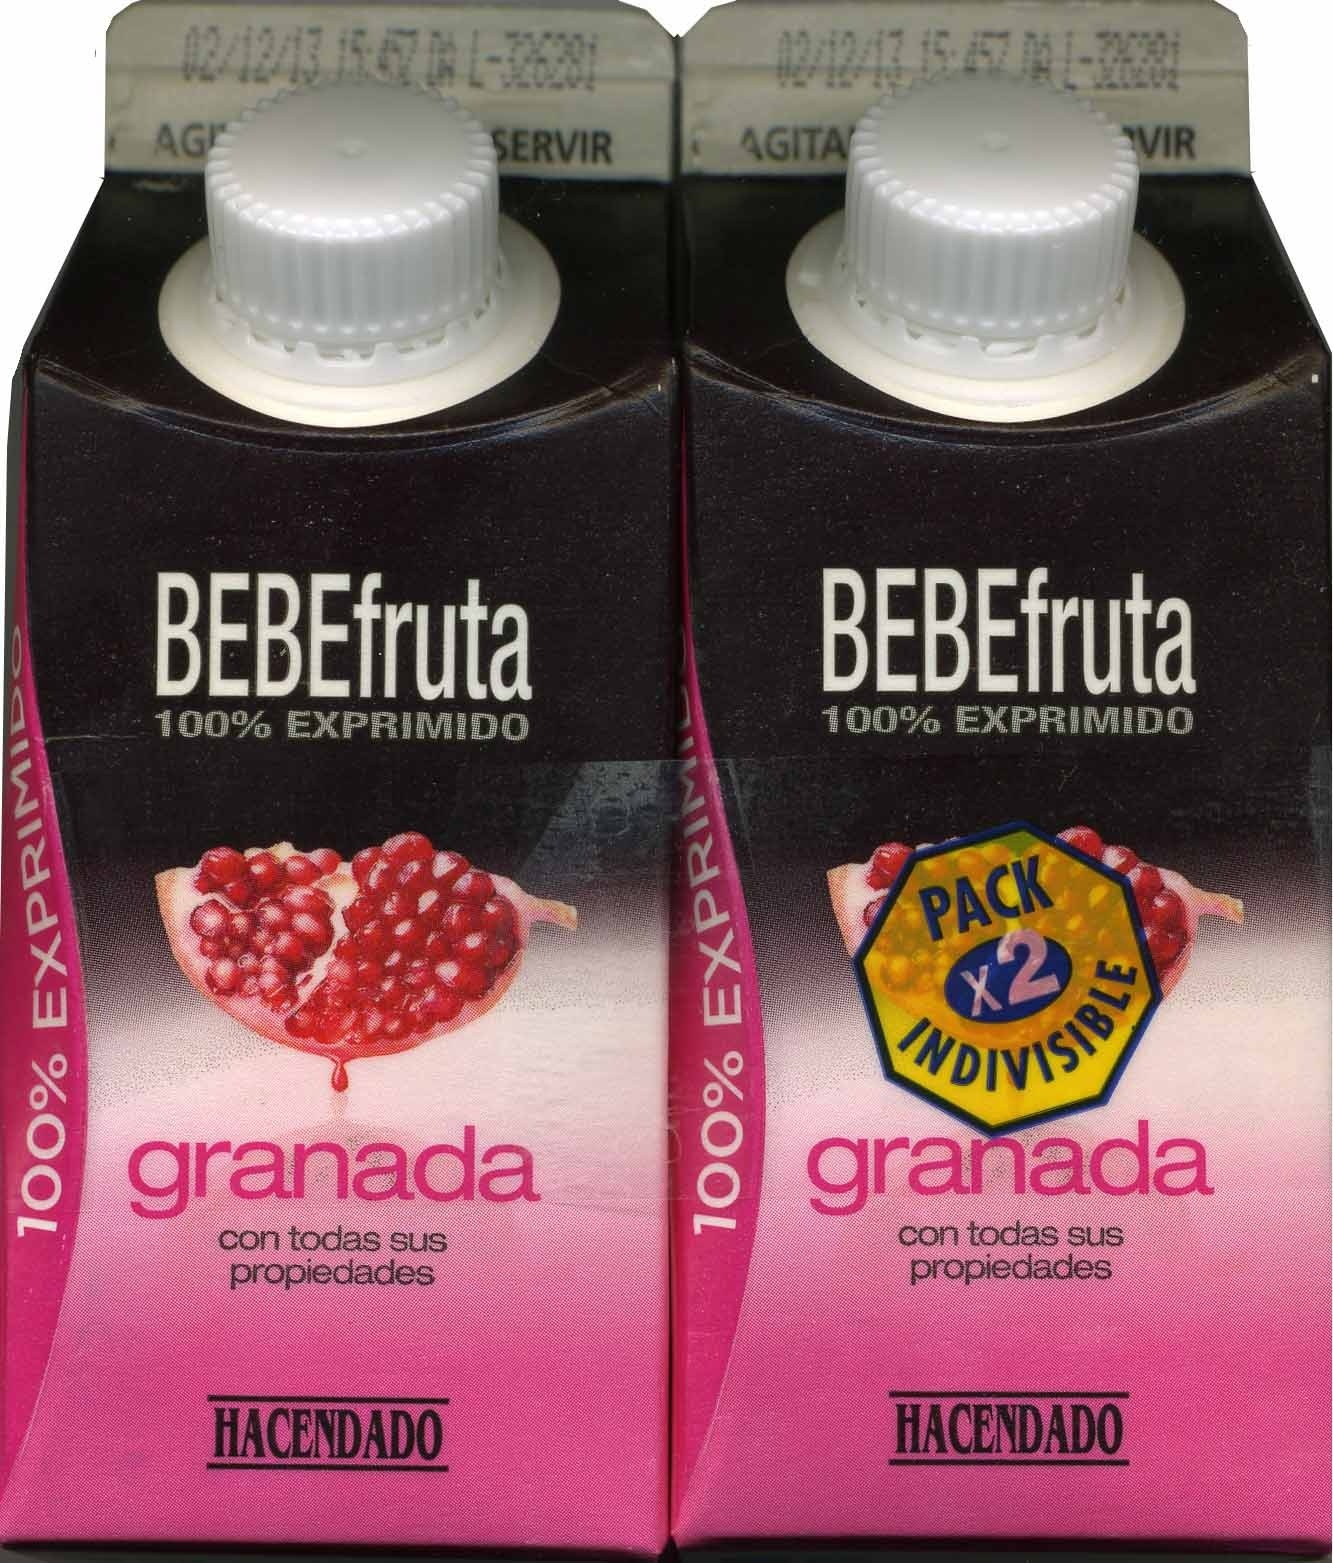 Bebe fruta 100% granada - Producto